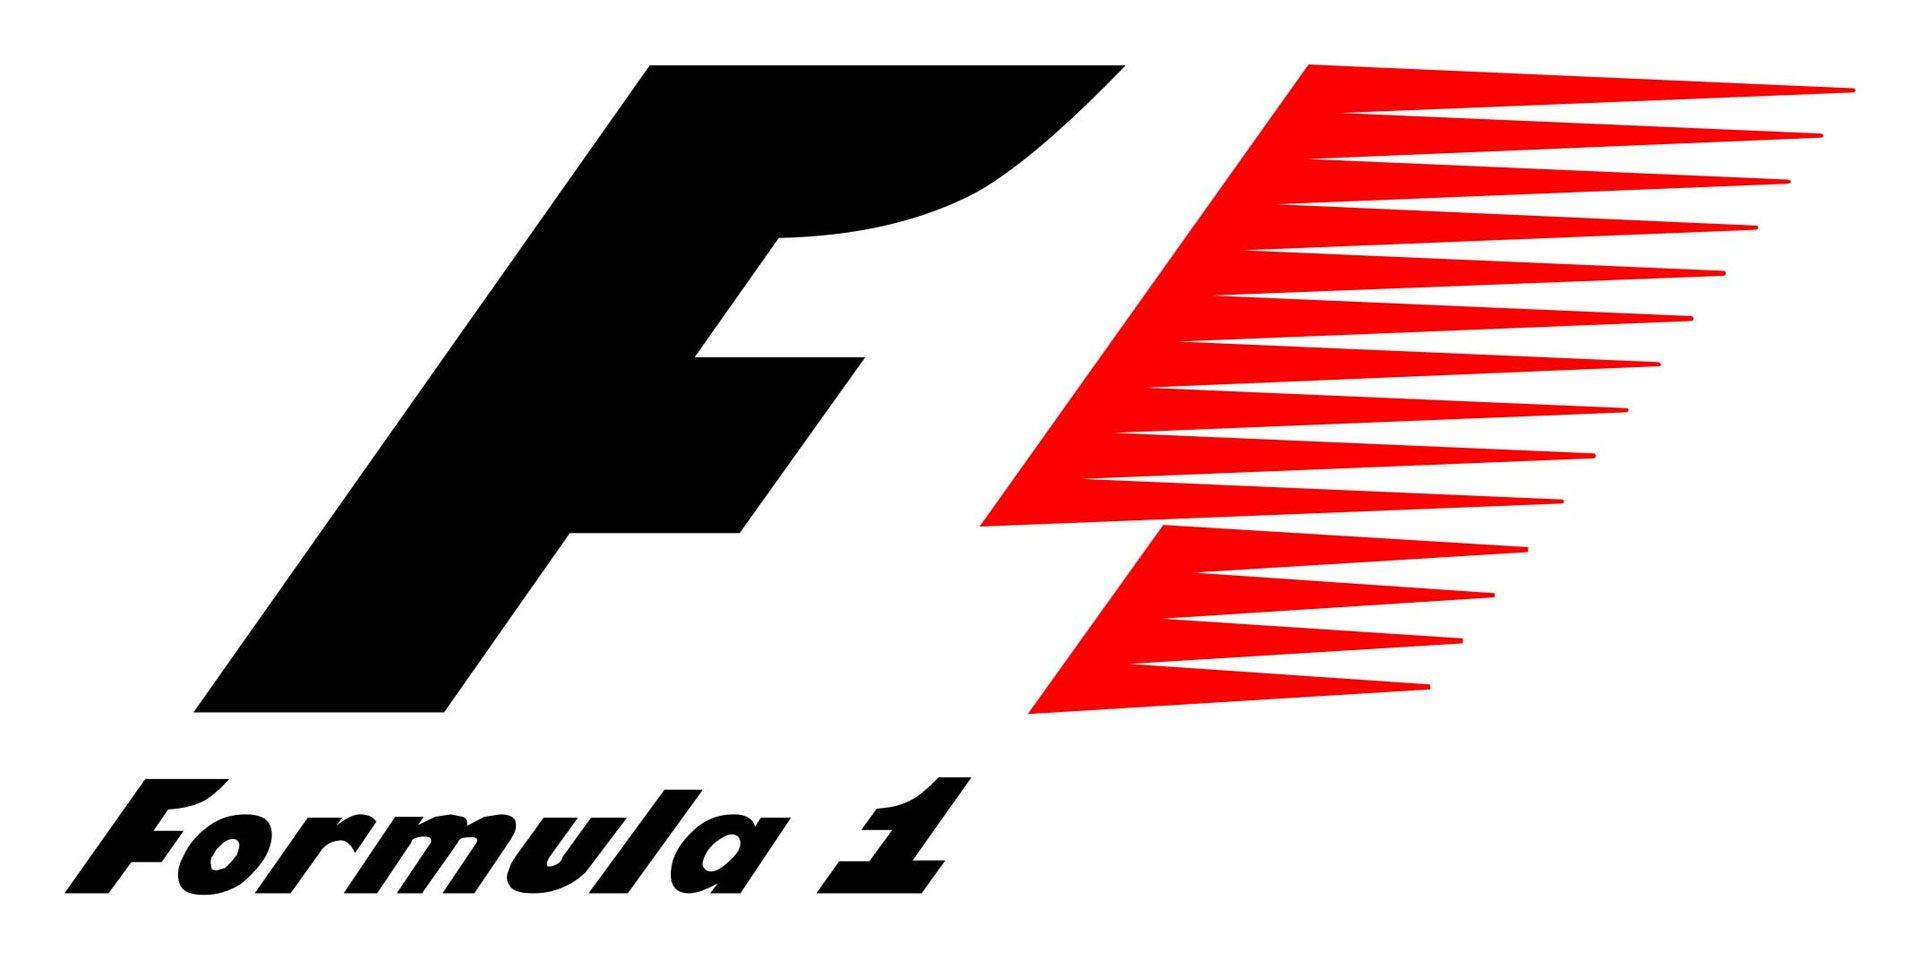 Formula One Logo - Old F1 logo was 